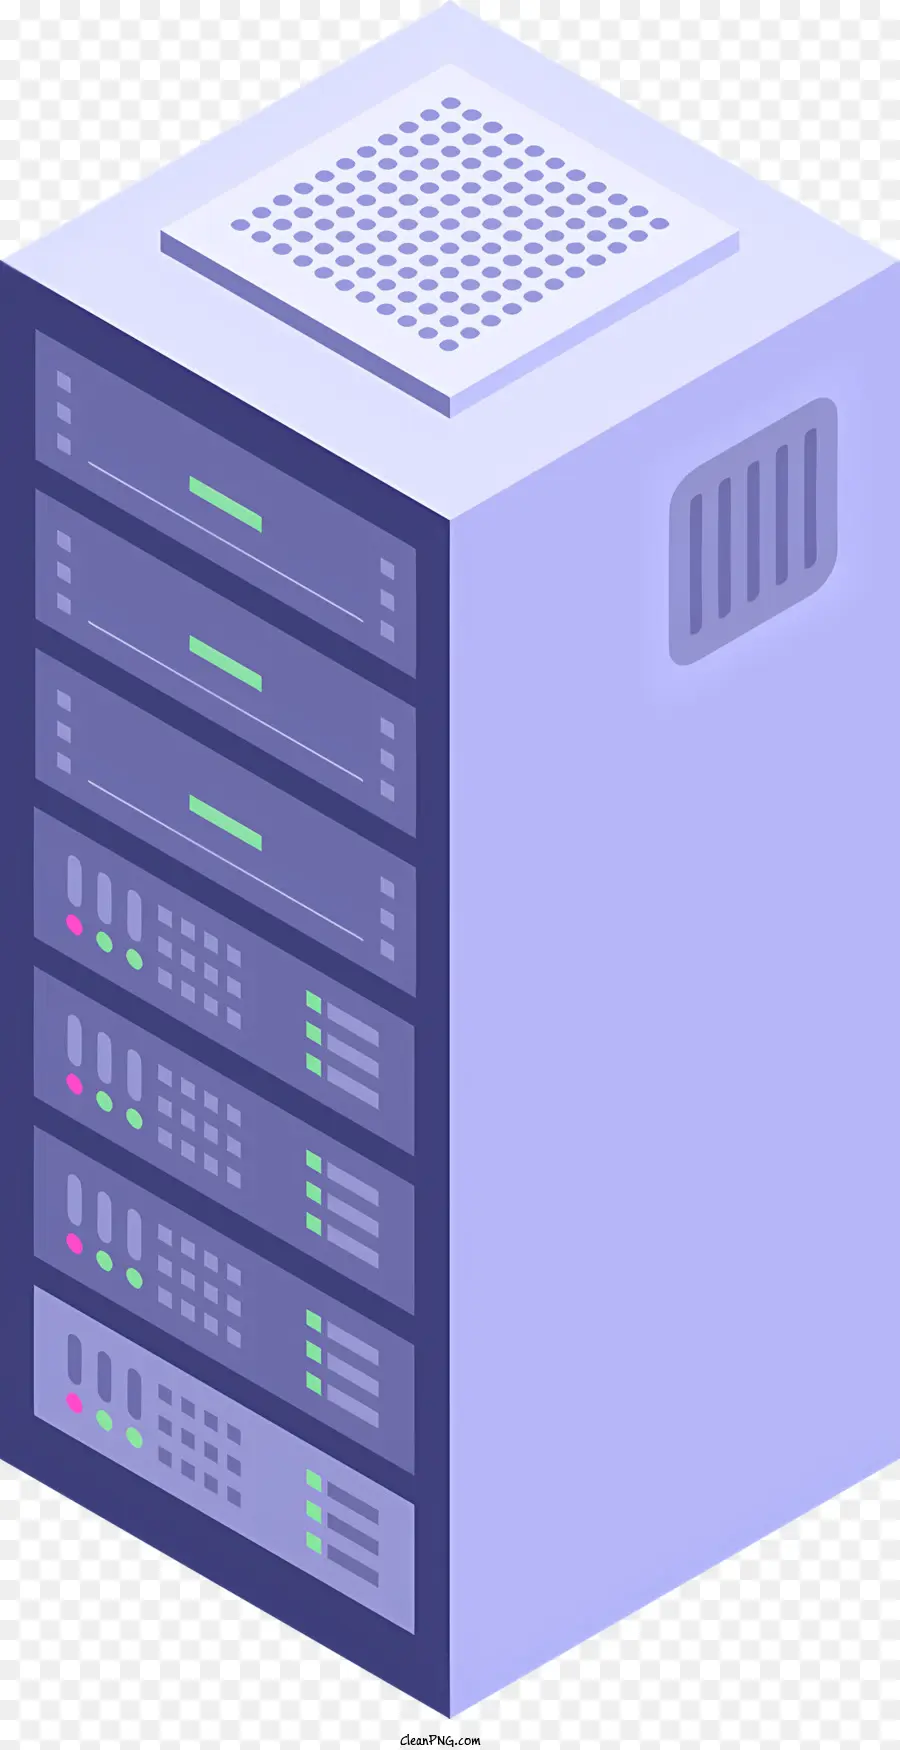 Cartoon Server Rack Server Kabel Metallregal - Drei Server auf Rack, die mit Kabeln verbunden sind